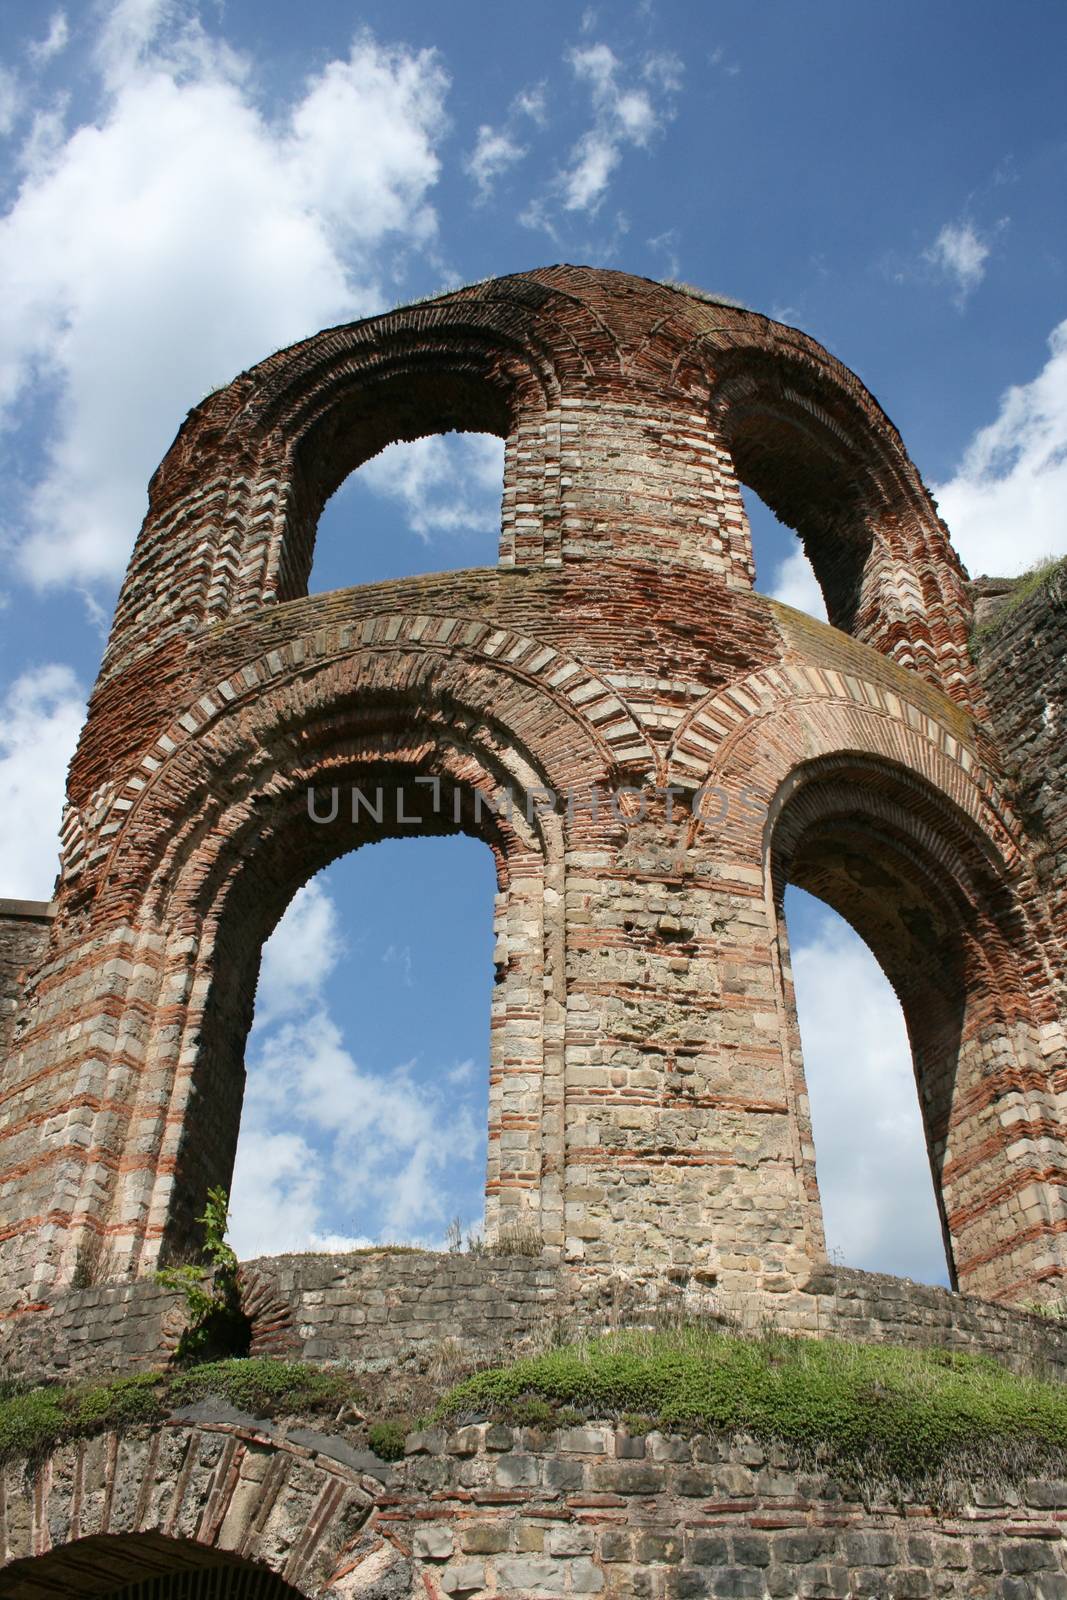 Ruins of a tower from Roman times in Trier, Germany  Ruine eines Turmes aus r�mischer Zeit in Trier,Deutschland by hadot